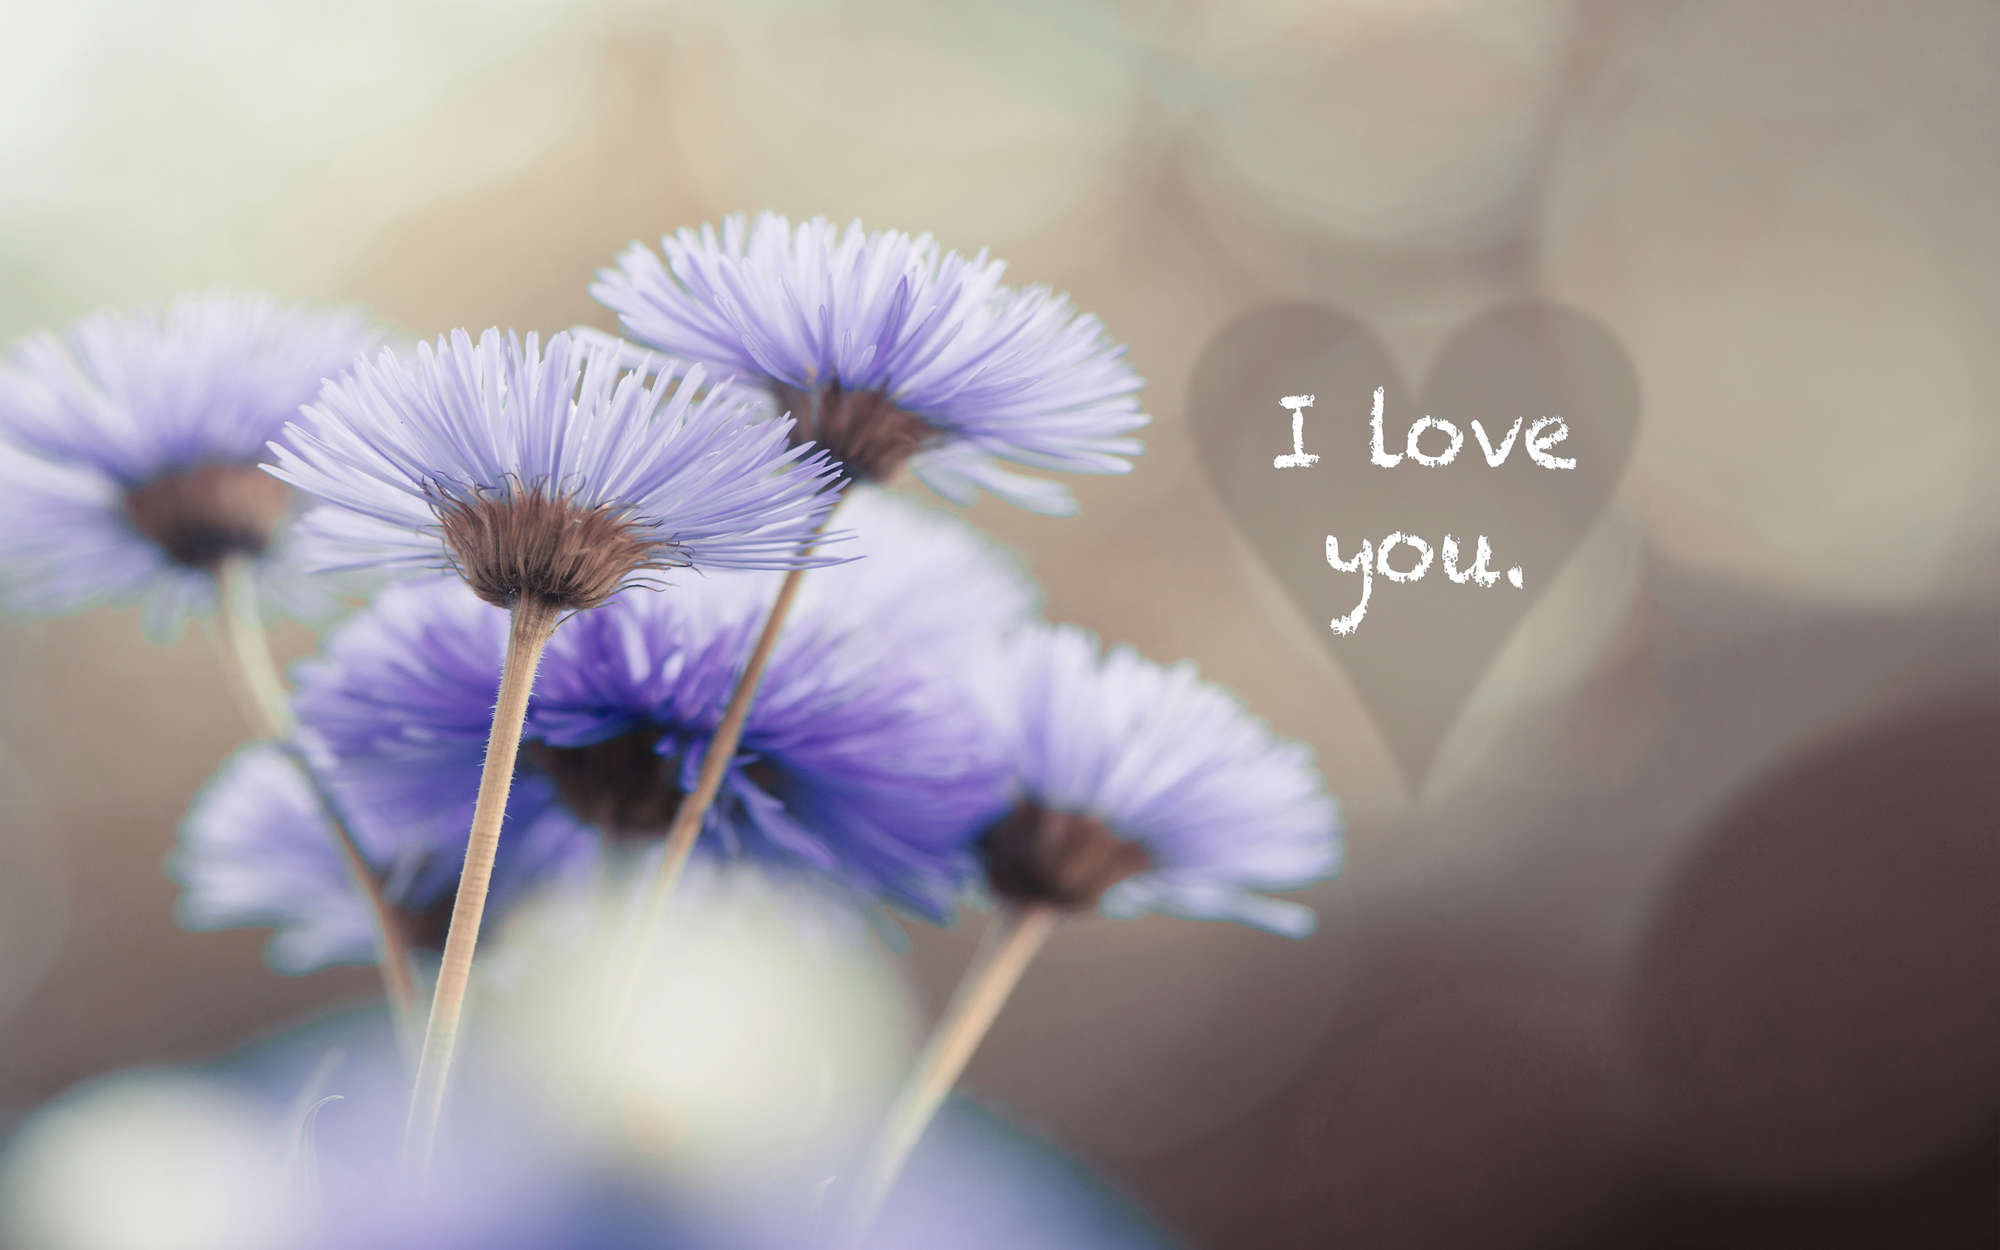             Fototapete Blumen in Violett mit Schriftzug "I love you" – Perlmutt Glattvlies
        